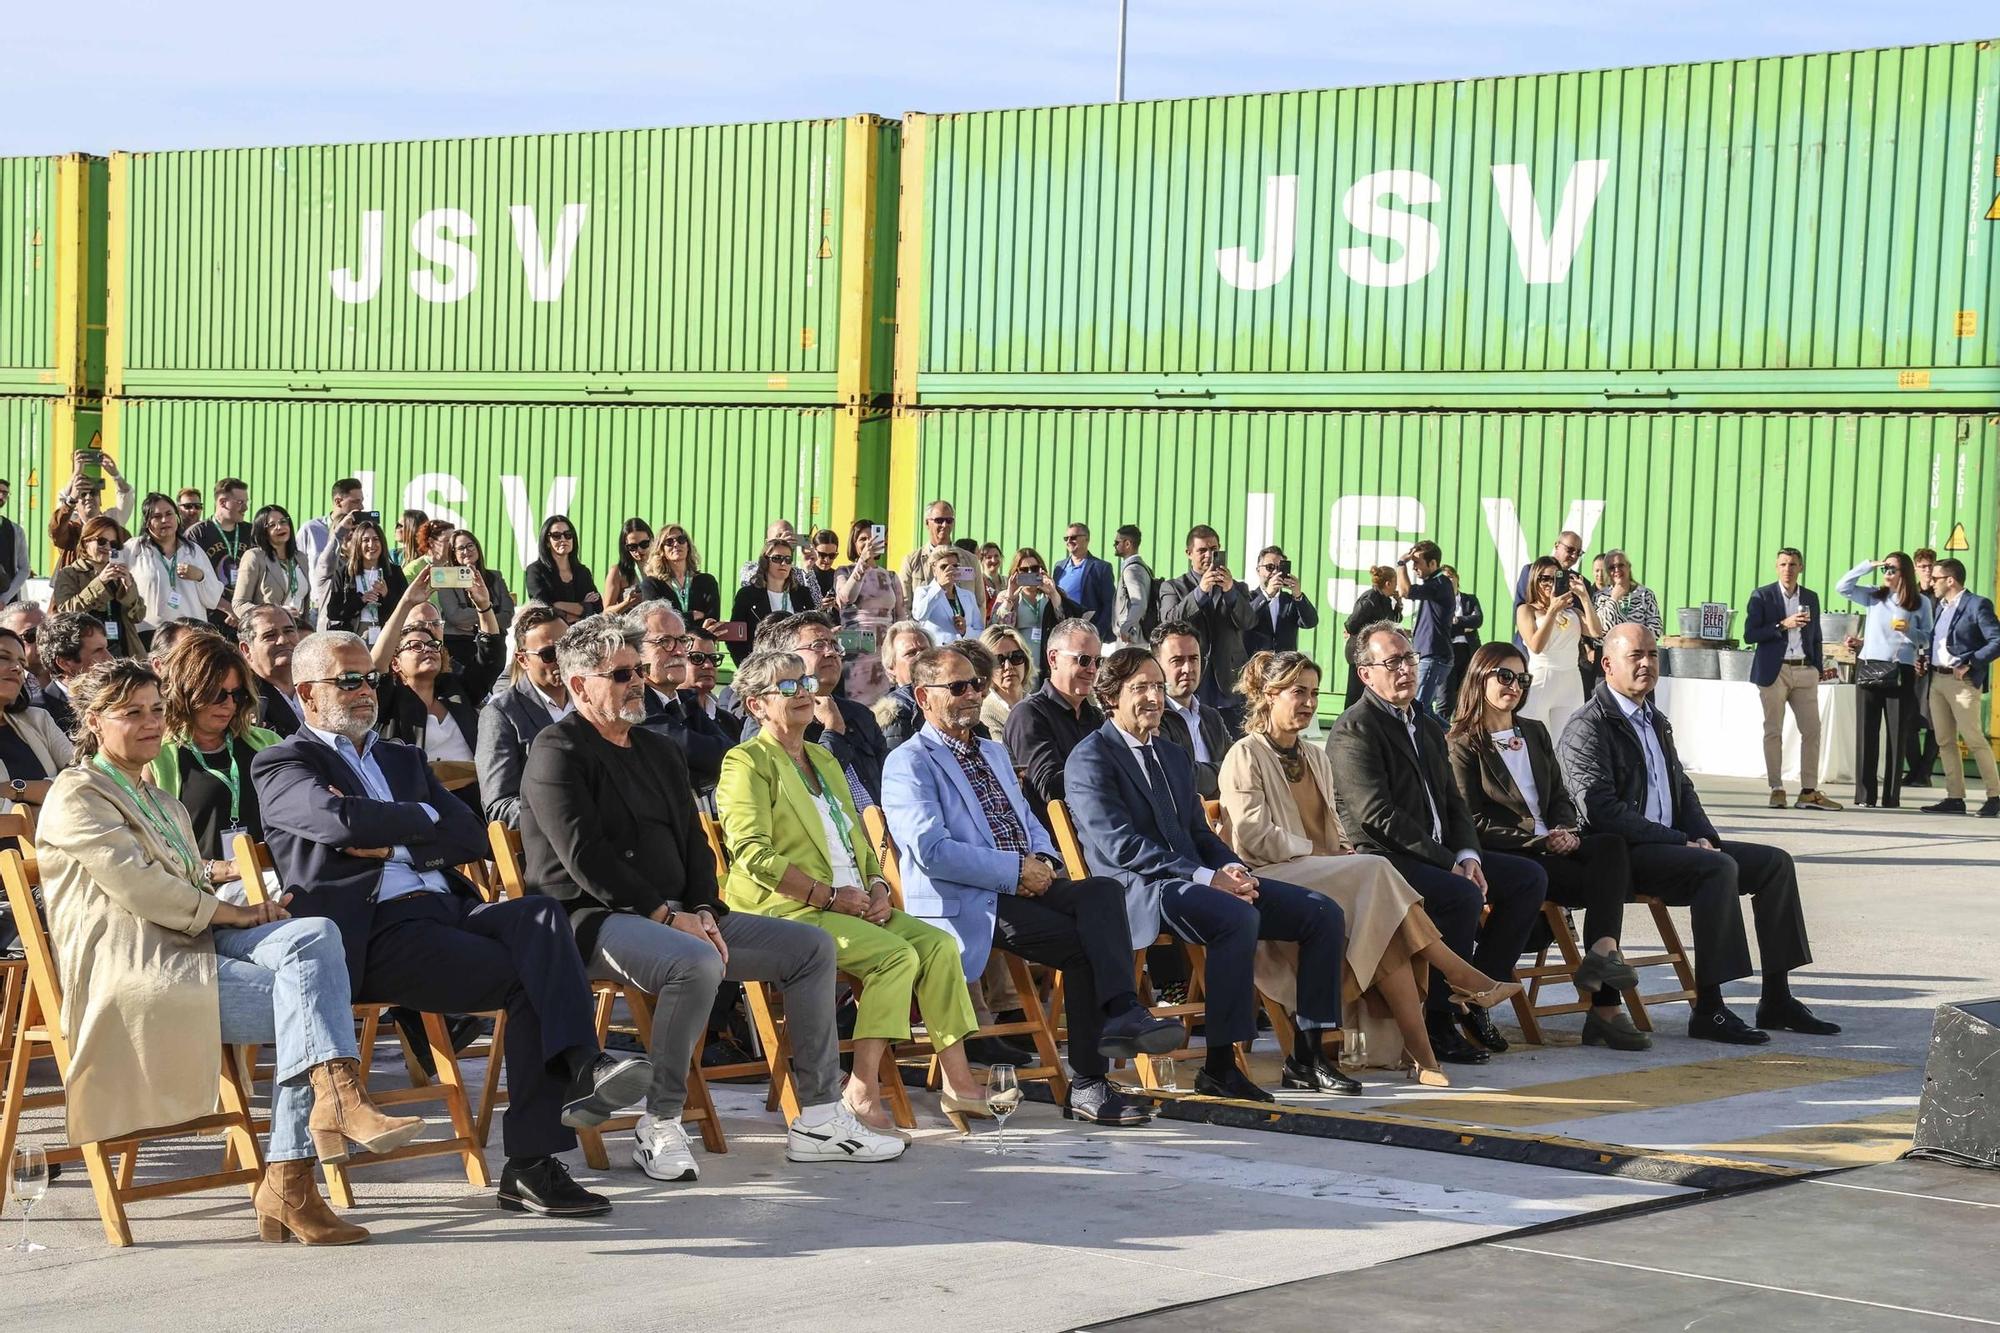 Inauguración de la nueva terminal de contenedores del puerto de Alicante, que gestiona la empresa JSV